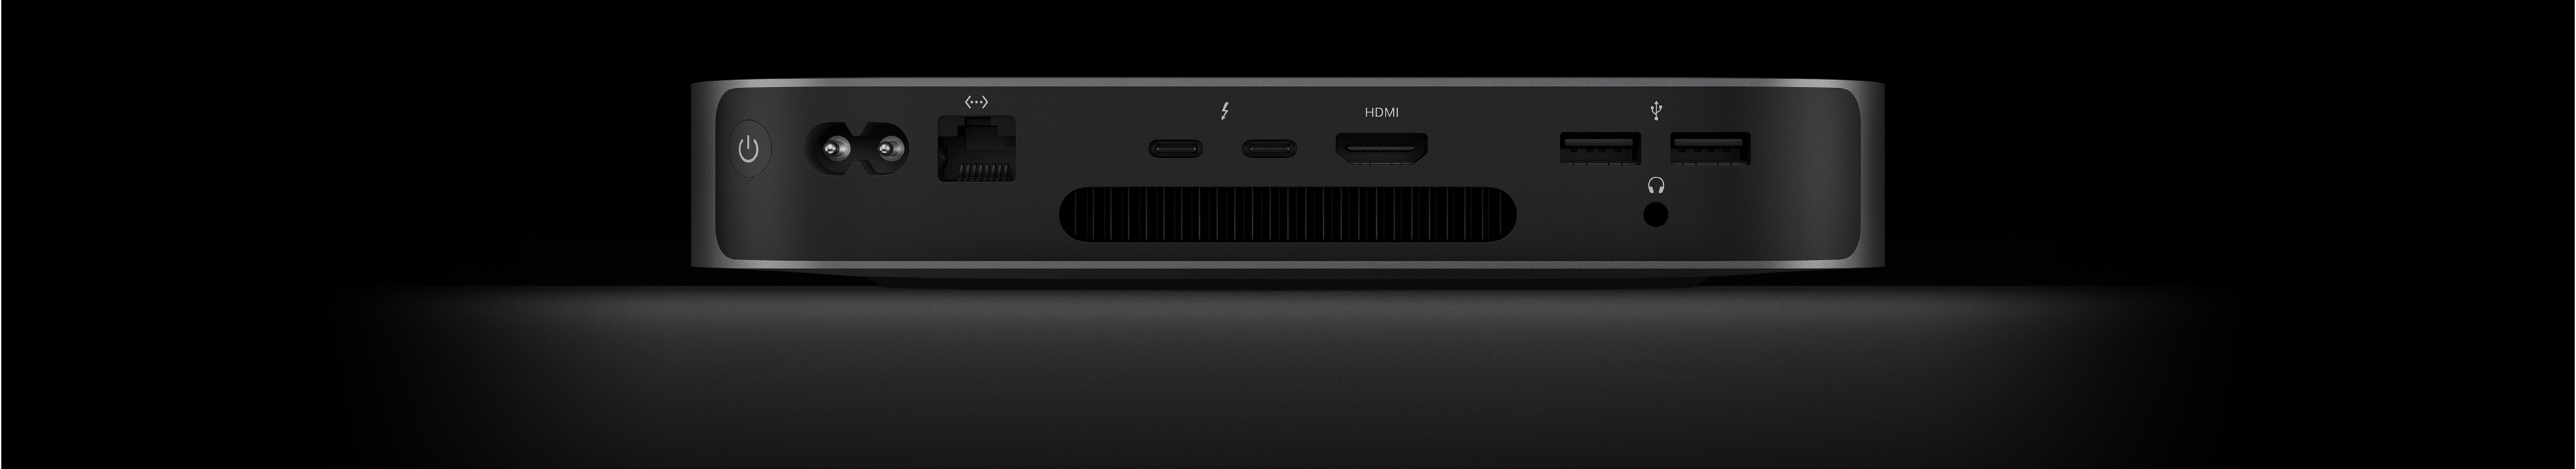 صورة خلفية لجهاز Mac mini تُظهر منفذي ثندربولت 4، ومنفذ HDMI، ومنفذي USB-A، ومقبس سماعات الرأس، ومنفذ إيثرنت غيغابت، ومنفذ الطاقة، وزر التشغيل.